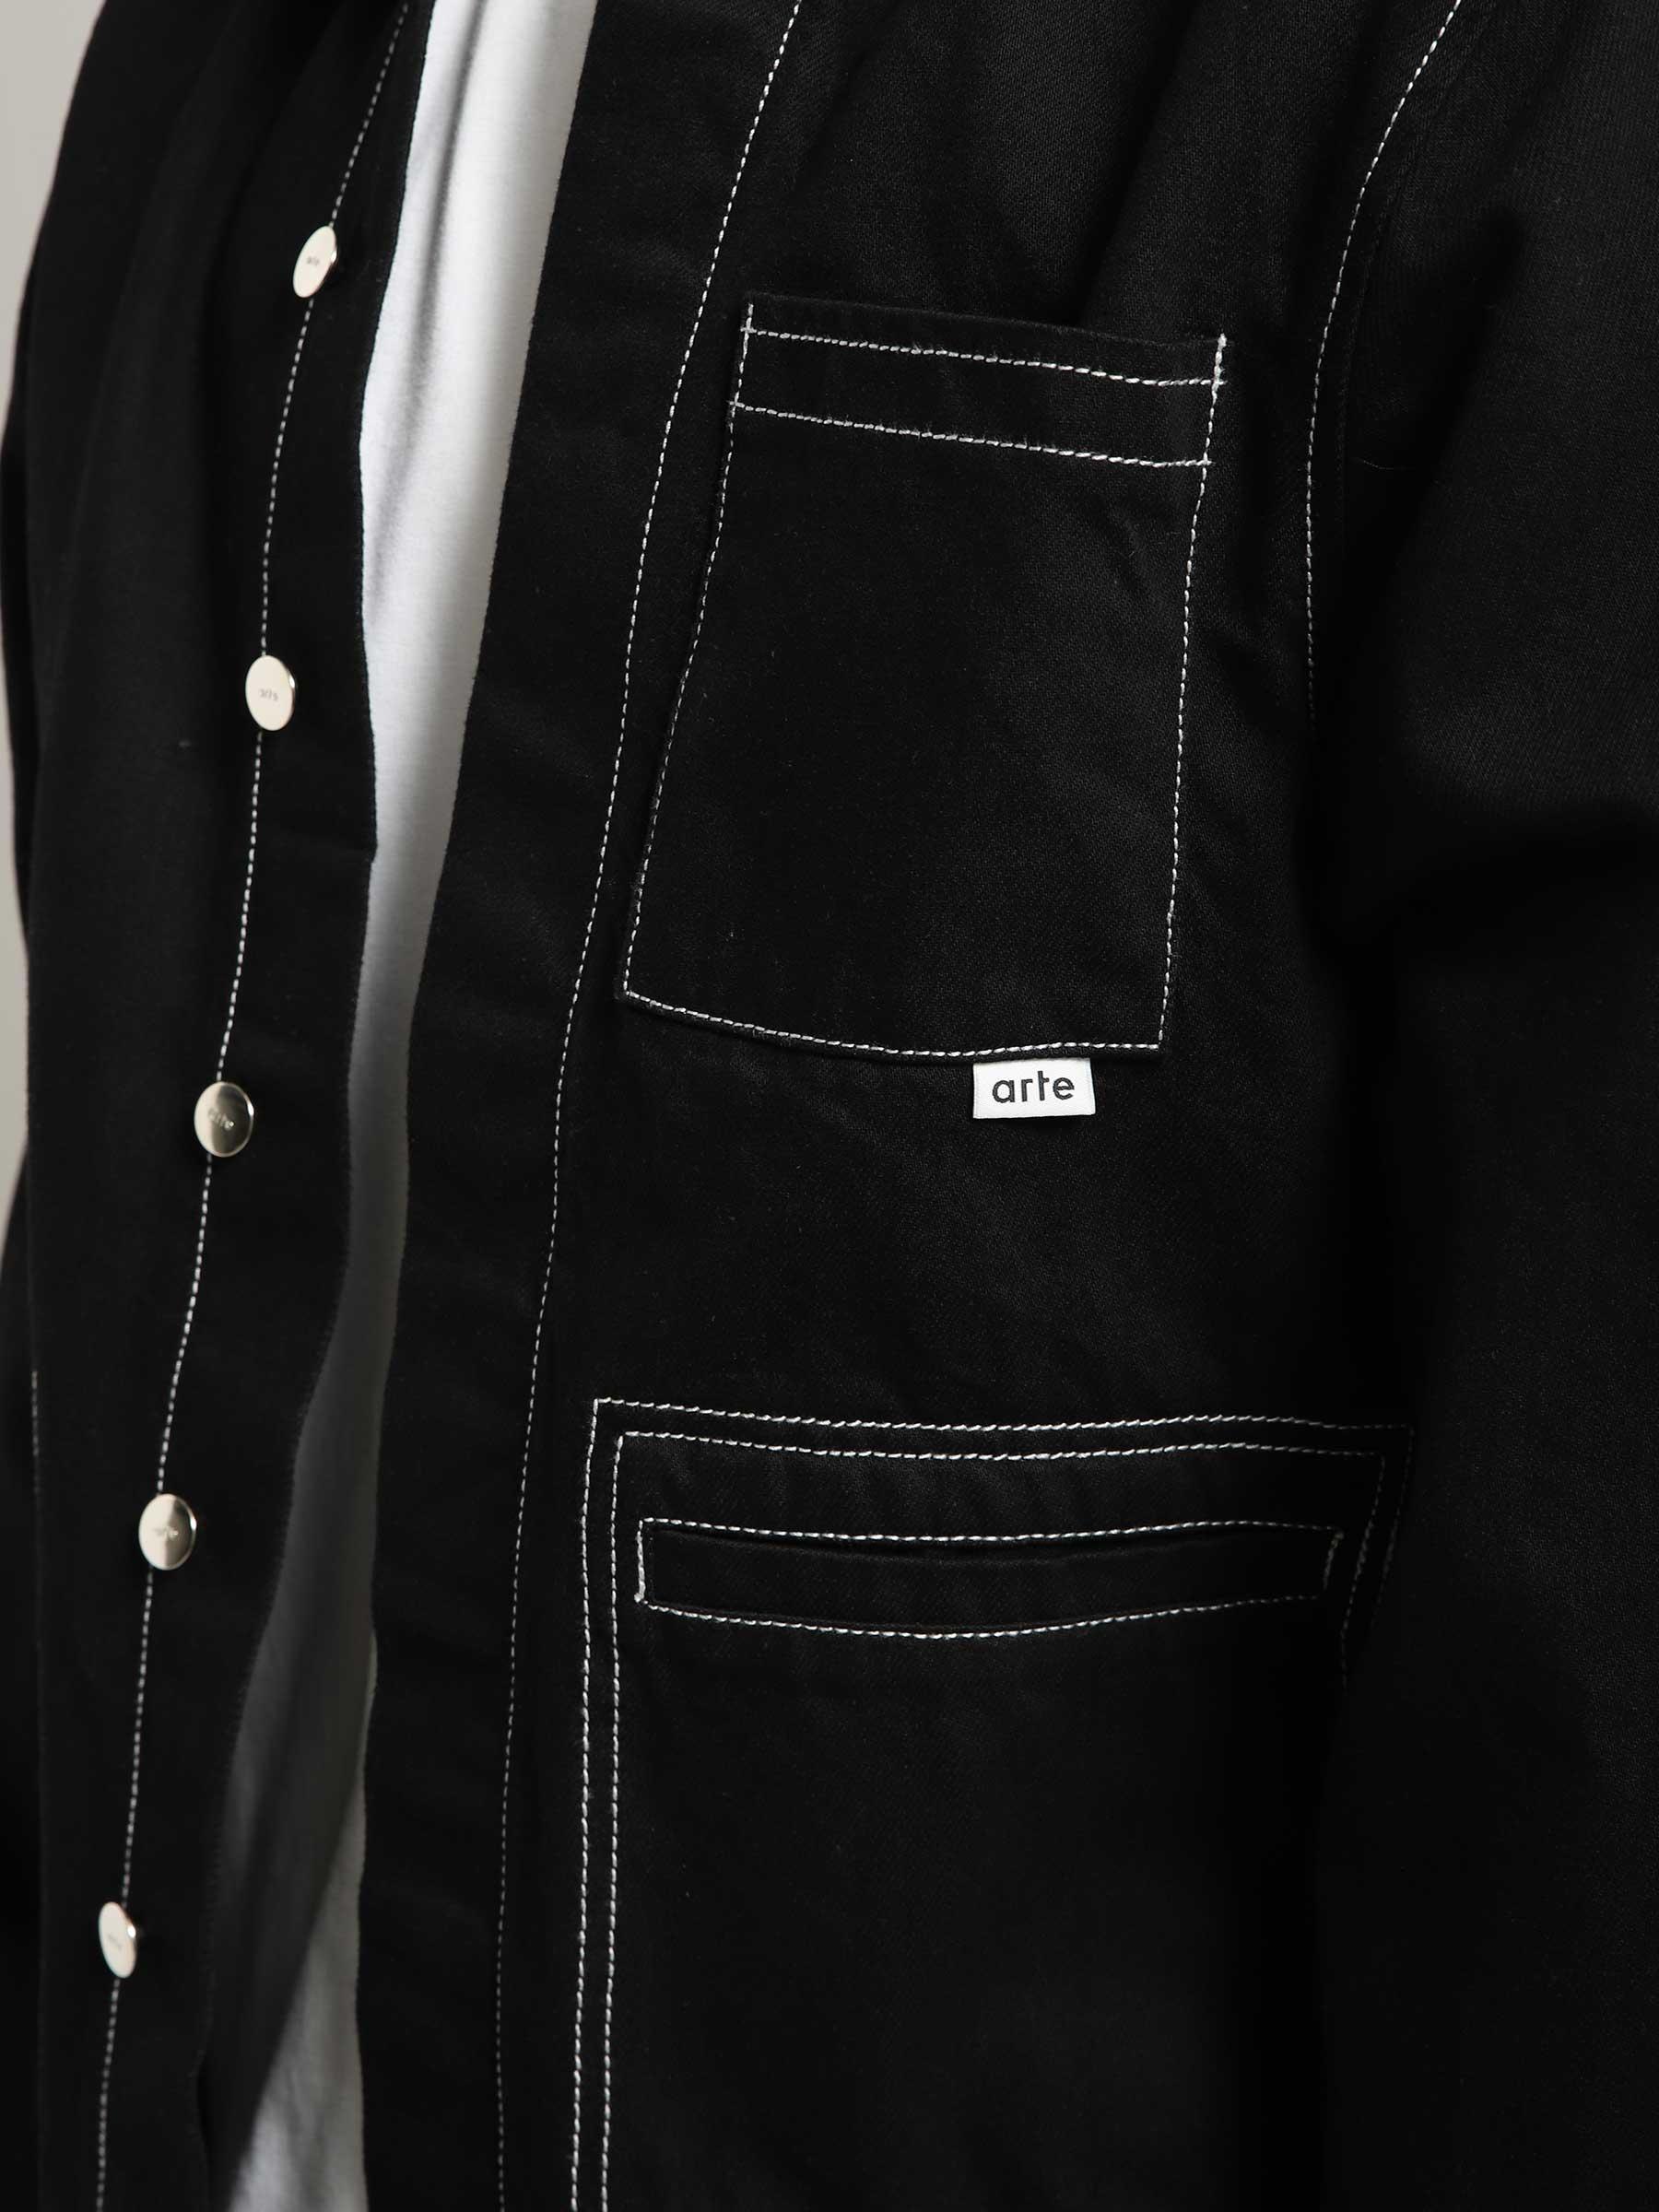 Poelzig Workwear Jacket Black Denim SS23-046J